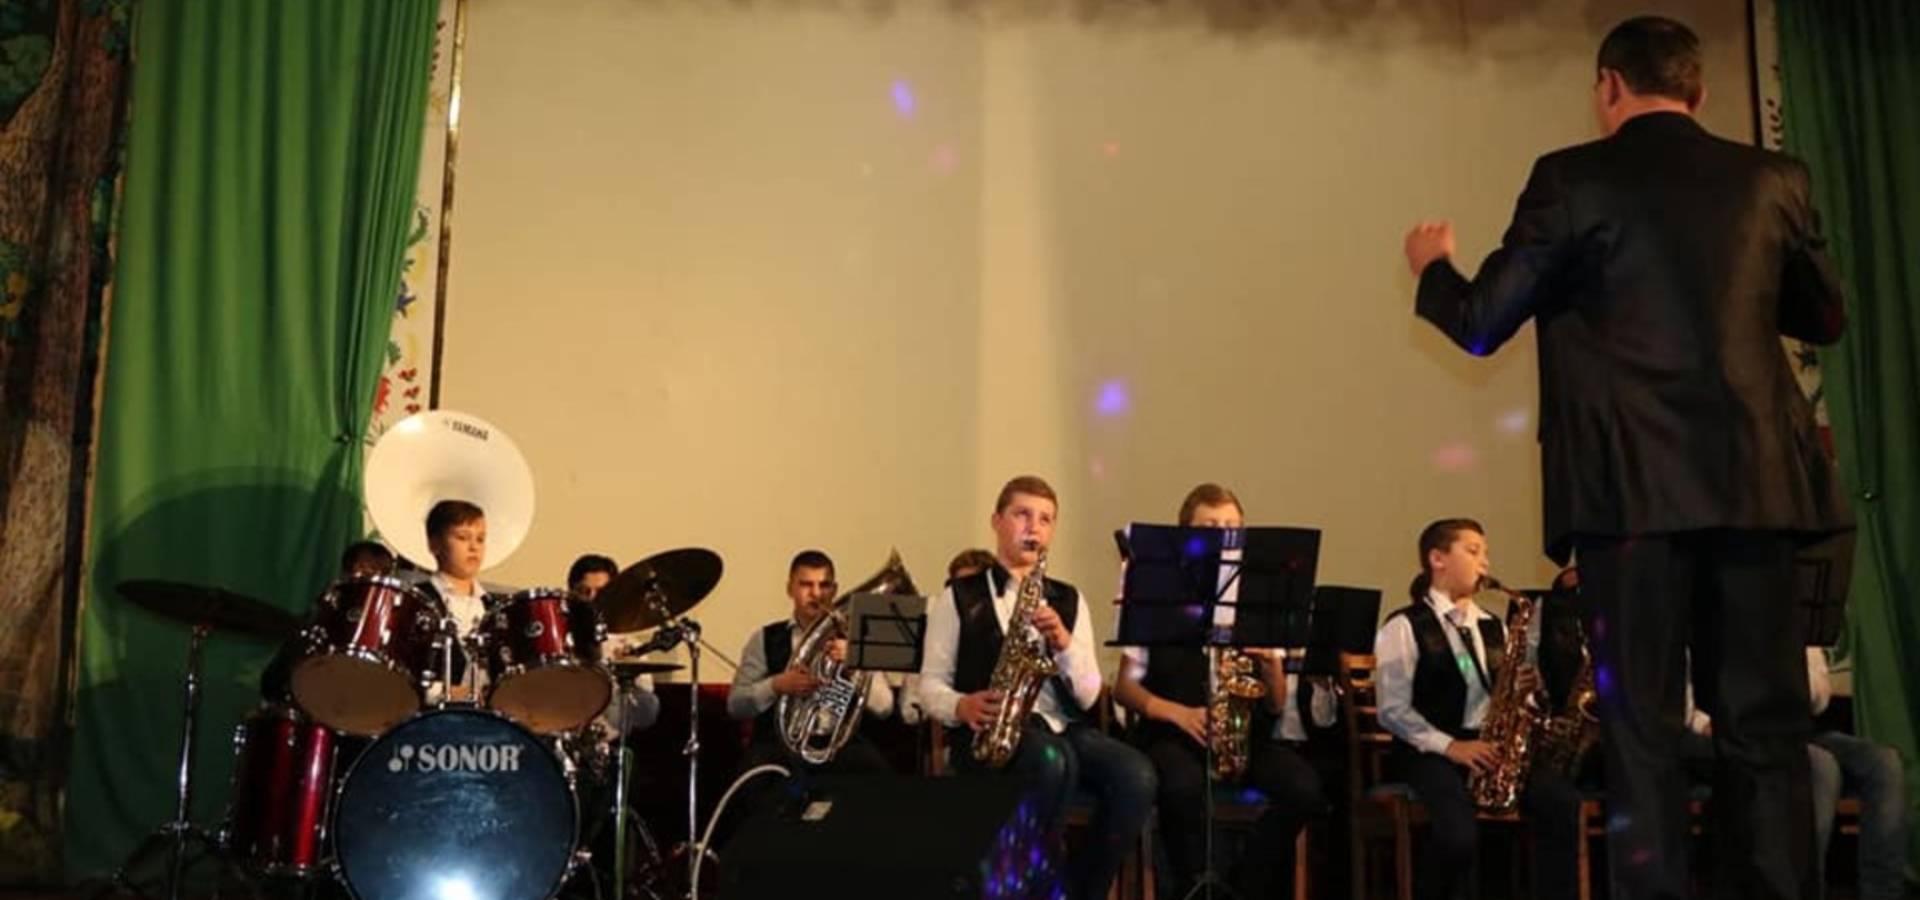 Юні оркестранти вражали глядачів у "Поділлі" в Хмільнику  на Вінниччині 